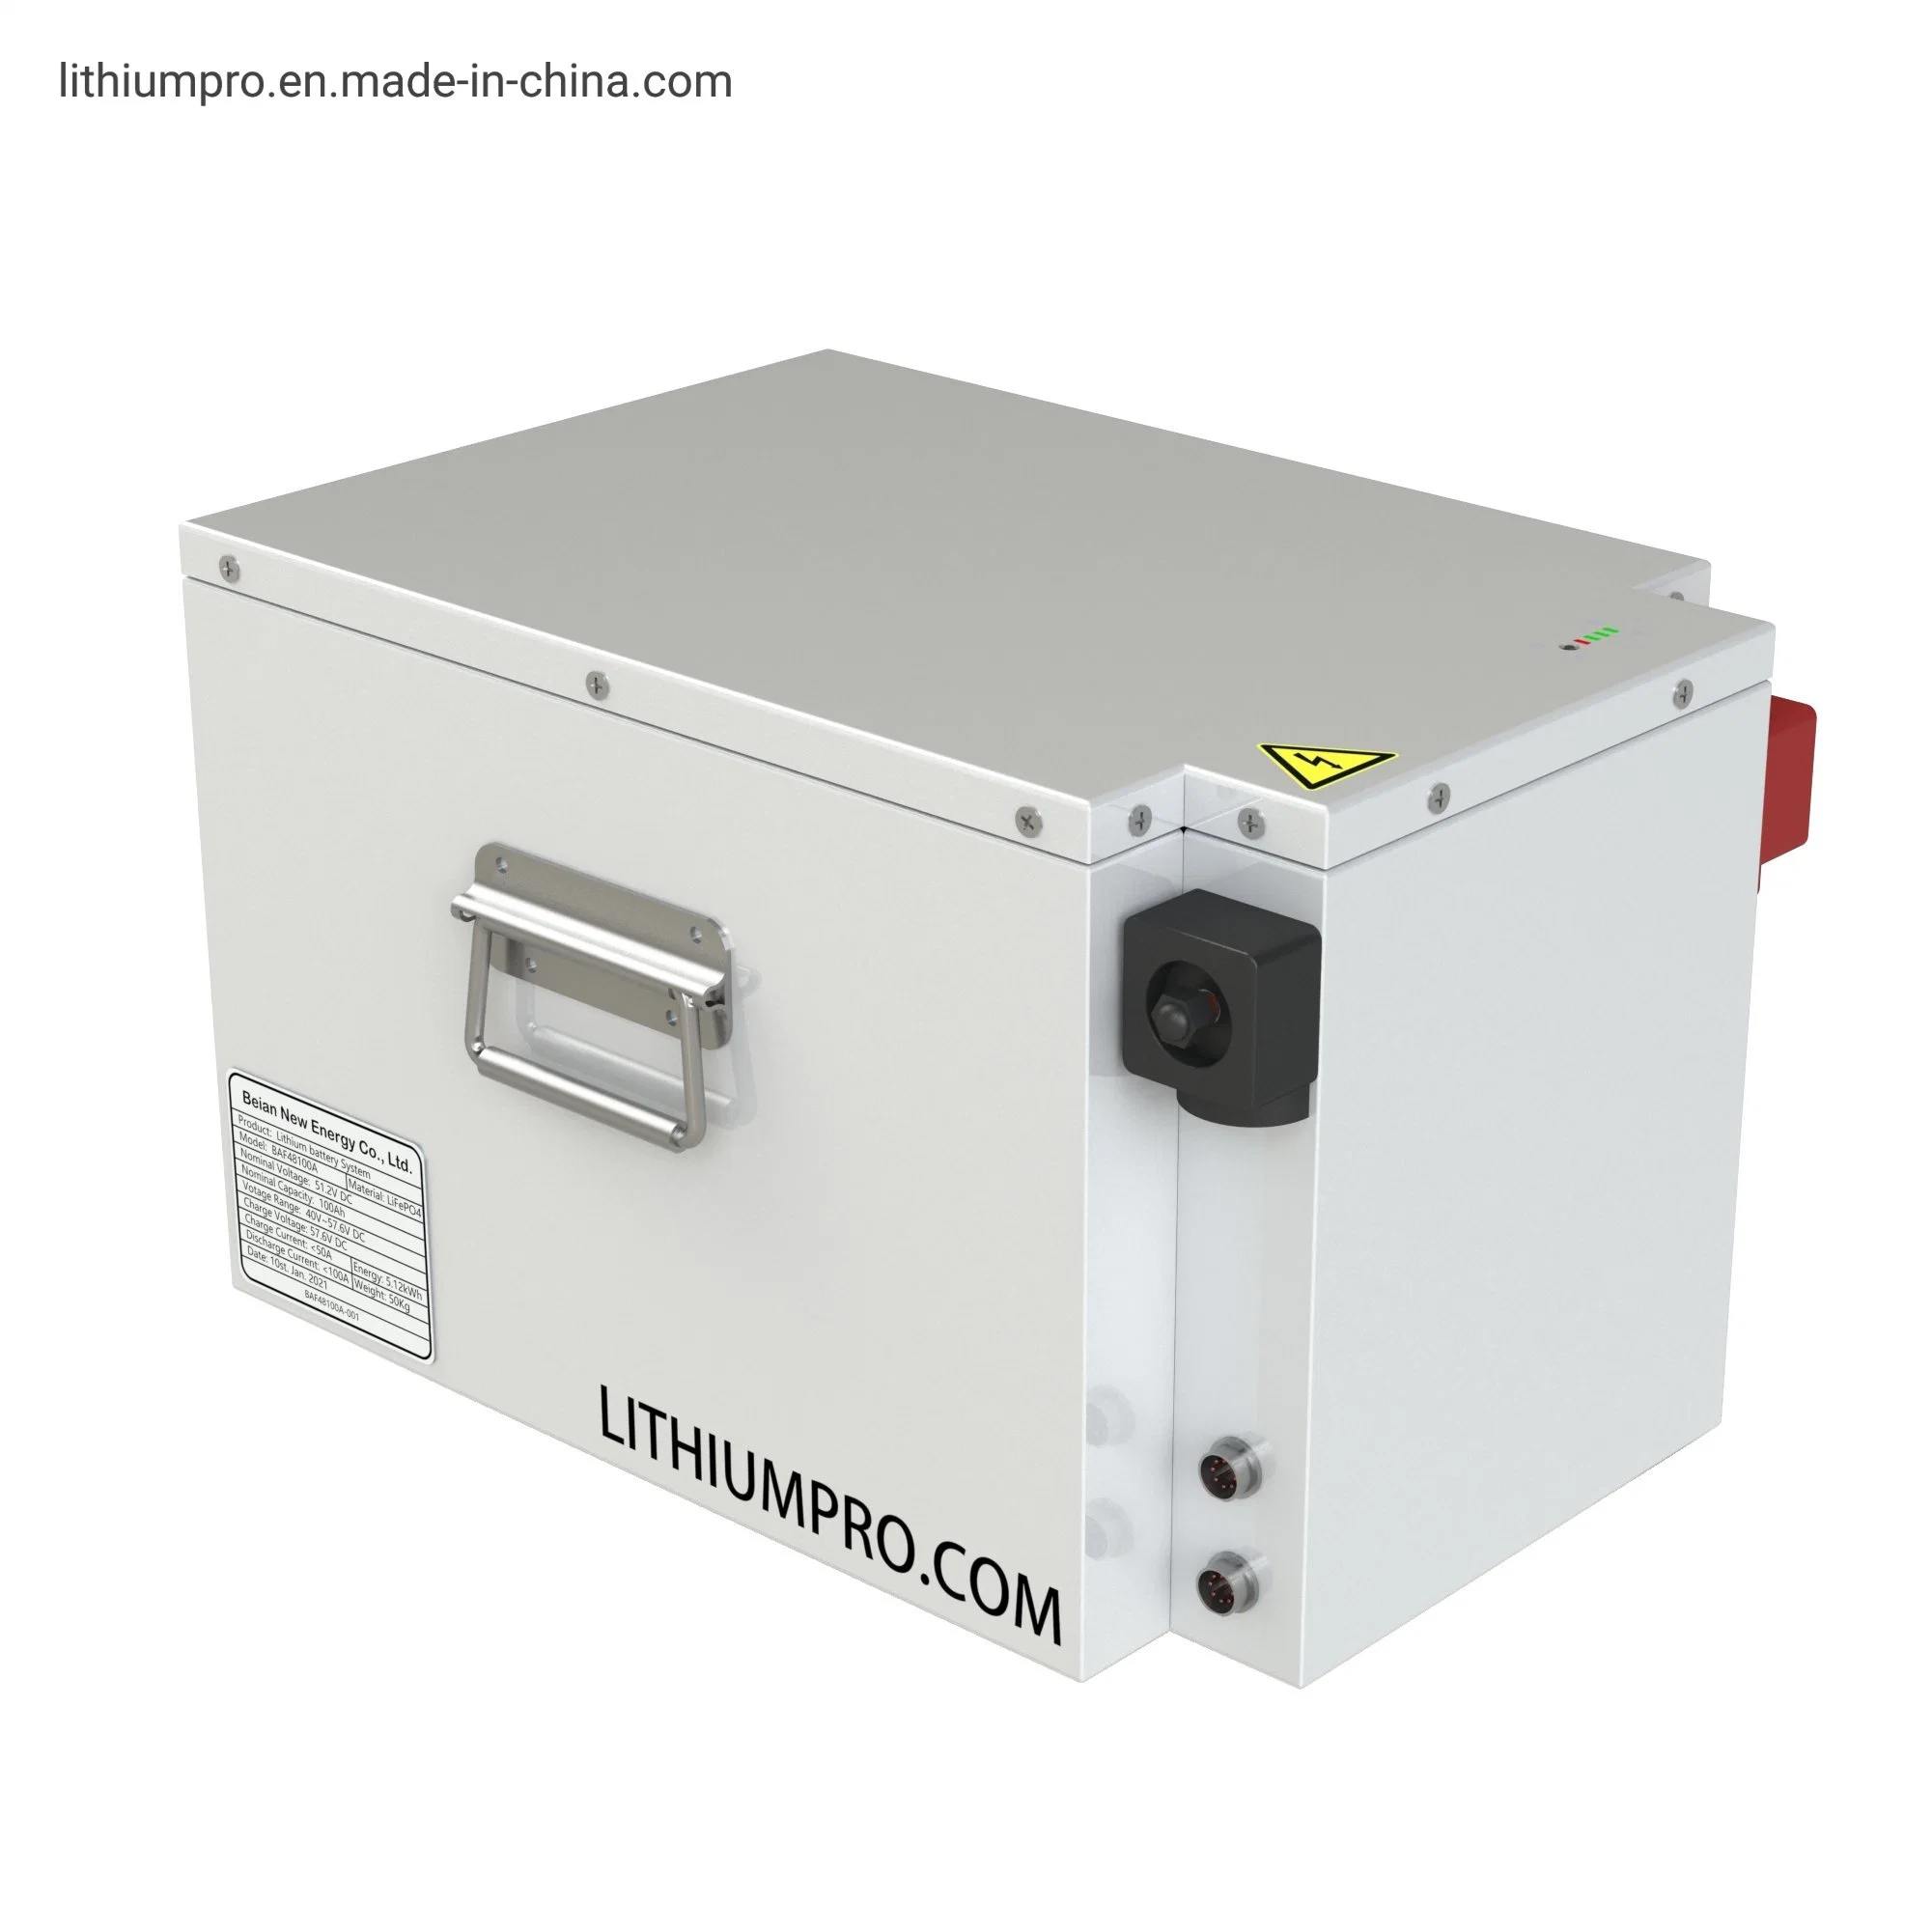 Bateria de iões de lítio de 48V100ah com sistema de monitorização da bateria (BMS) inteligente para ESS, estação de alimentação, veículo elétrico (EV) pequeno